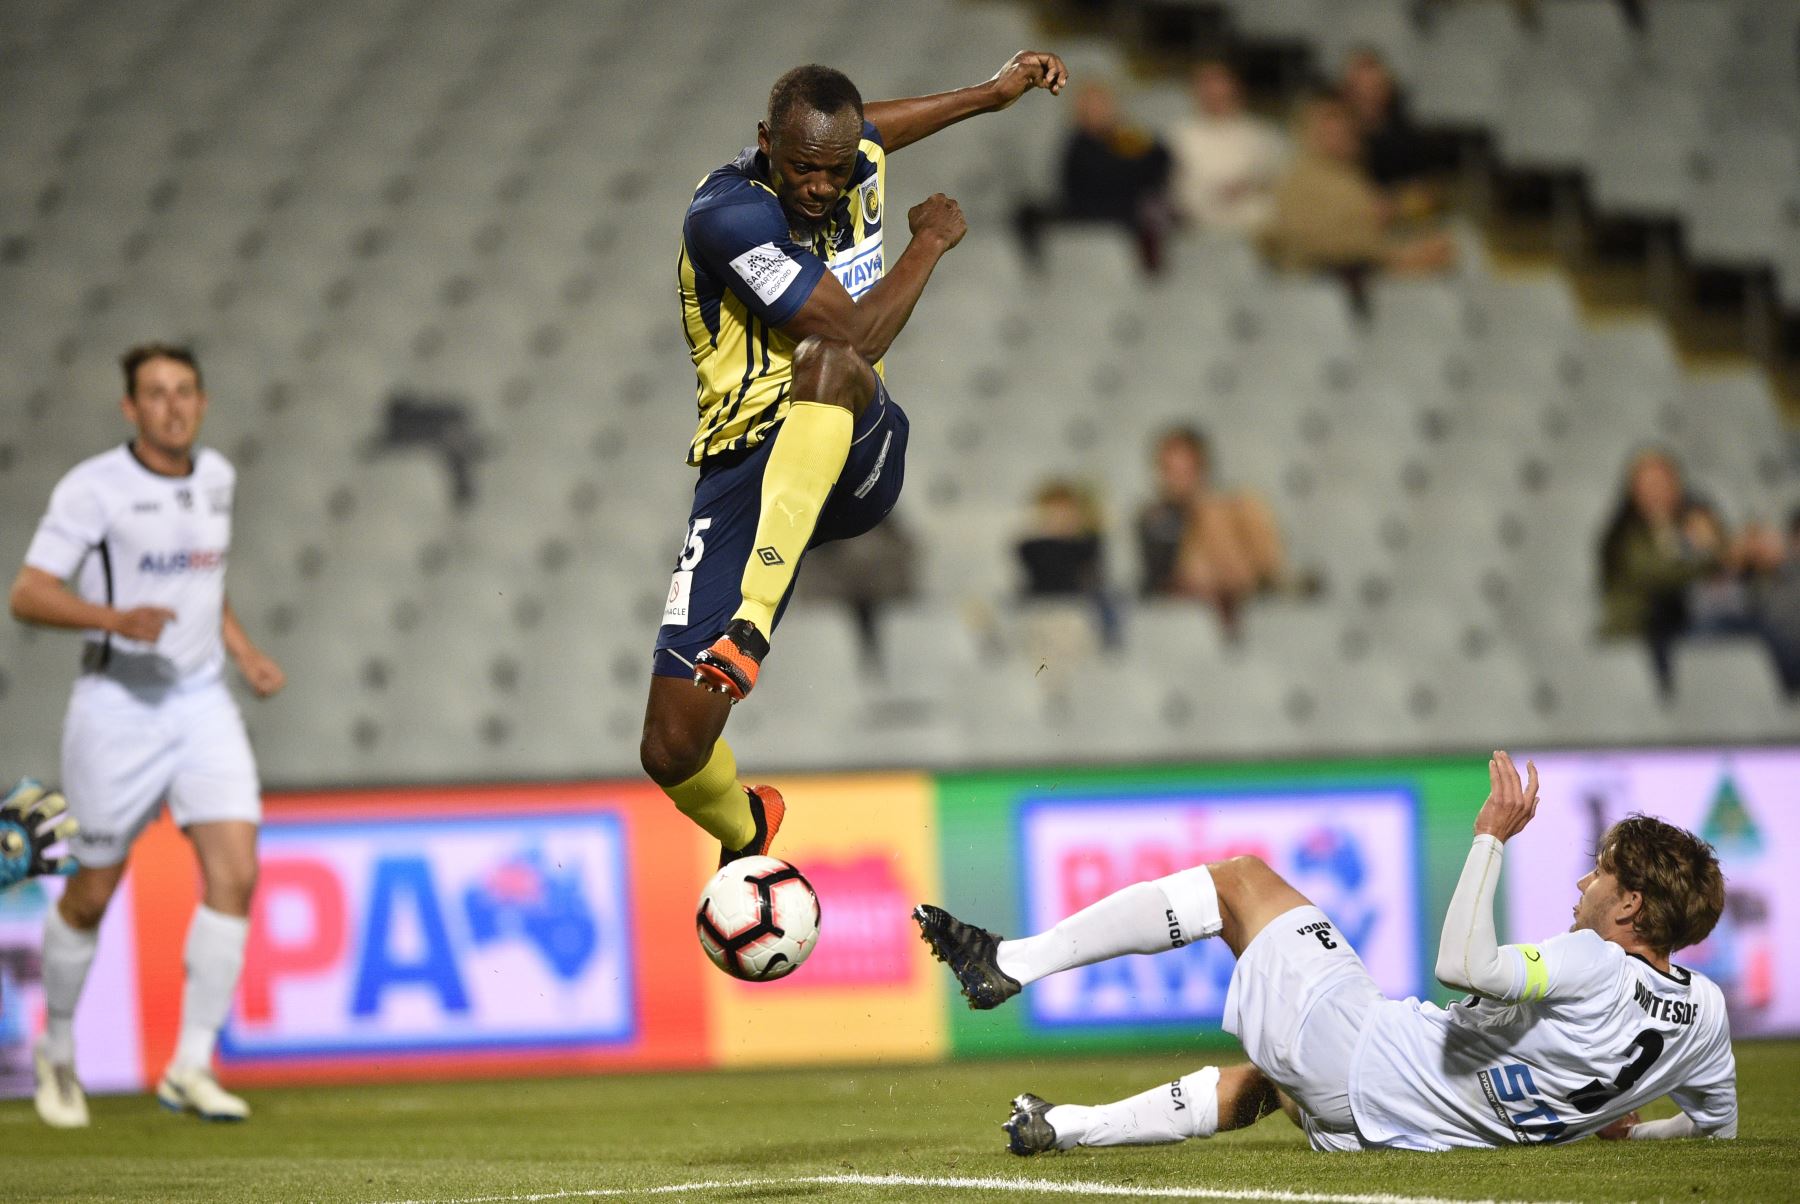 El velocista olímpico Usain Bolt, que juega para el club de fútbol A-League Central Coast Mariners, salta mientras controla el balón en su primer inicio competitivo para el club contra Macarthur South West United en Sydney el 12 de octubre de 2018.  AFP